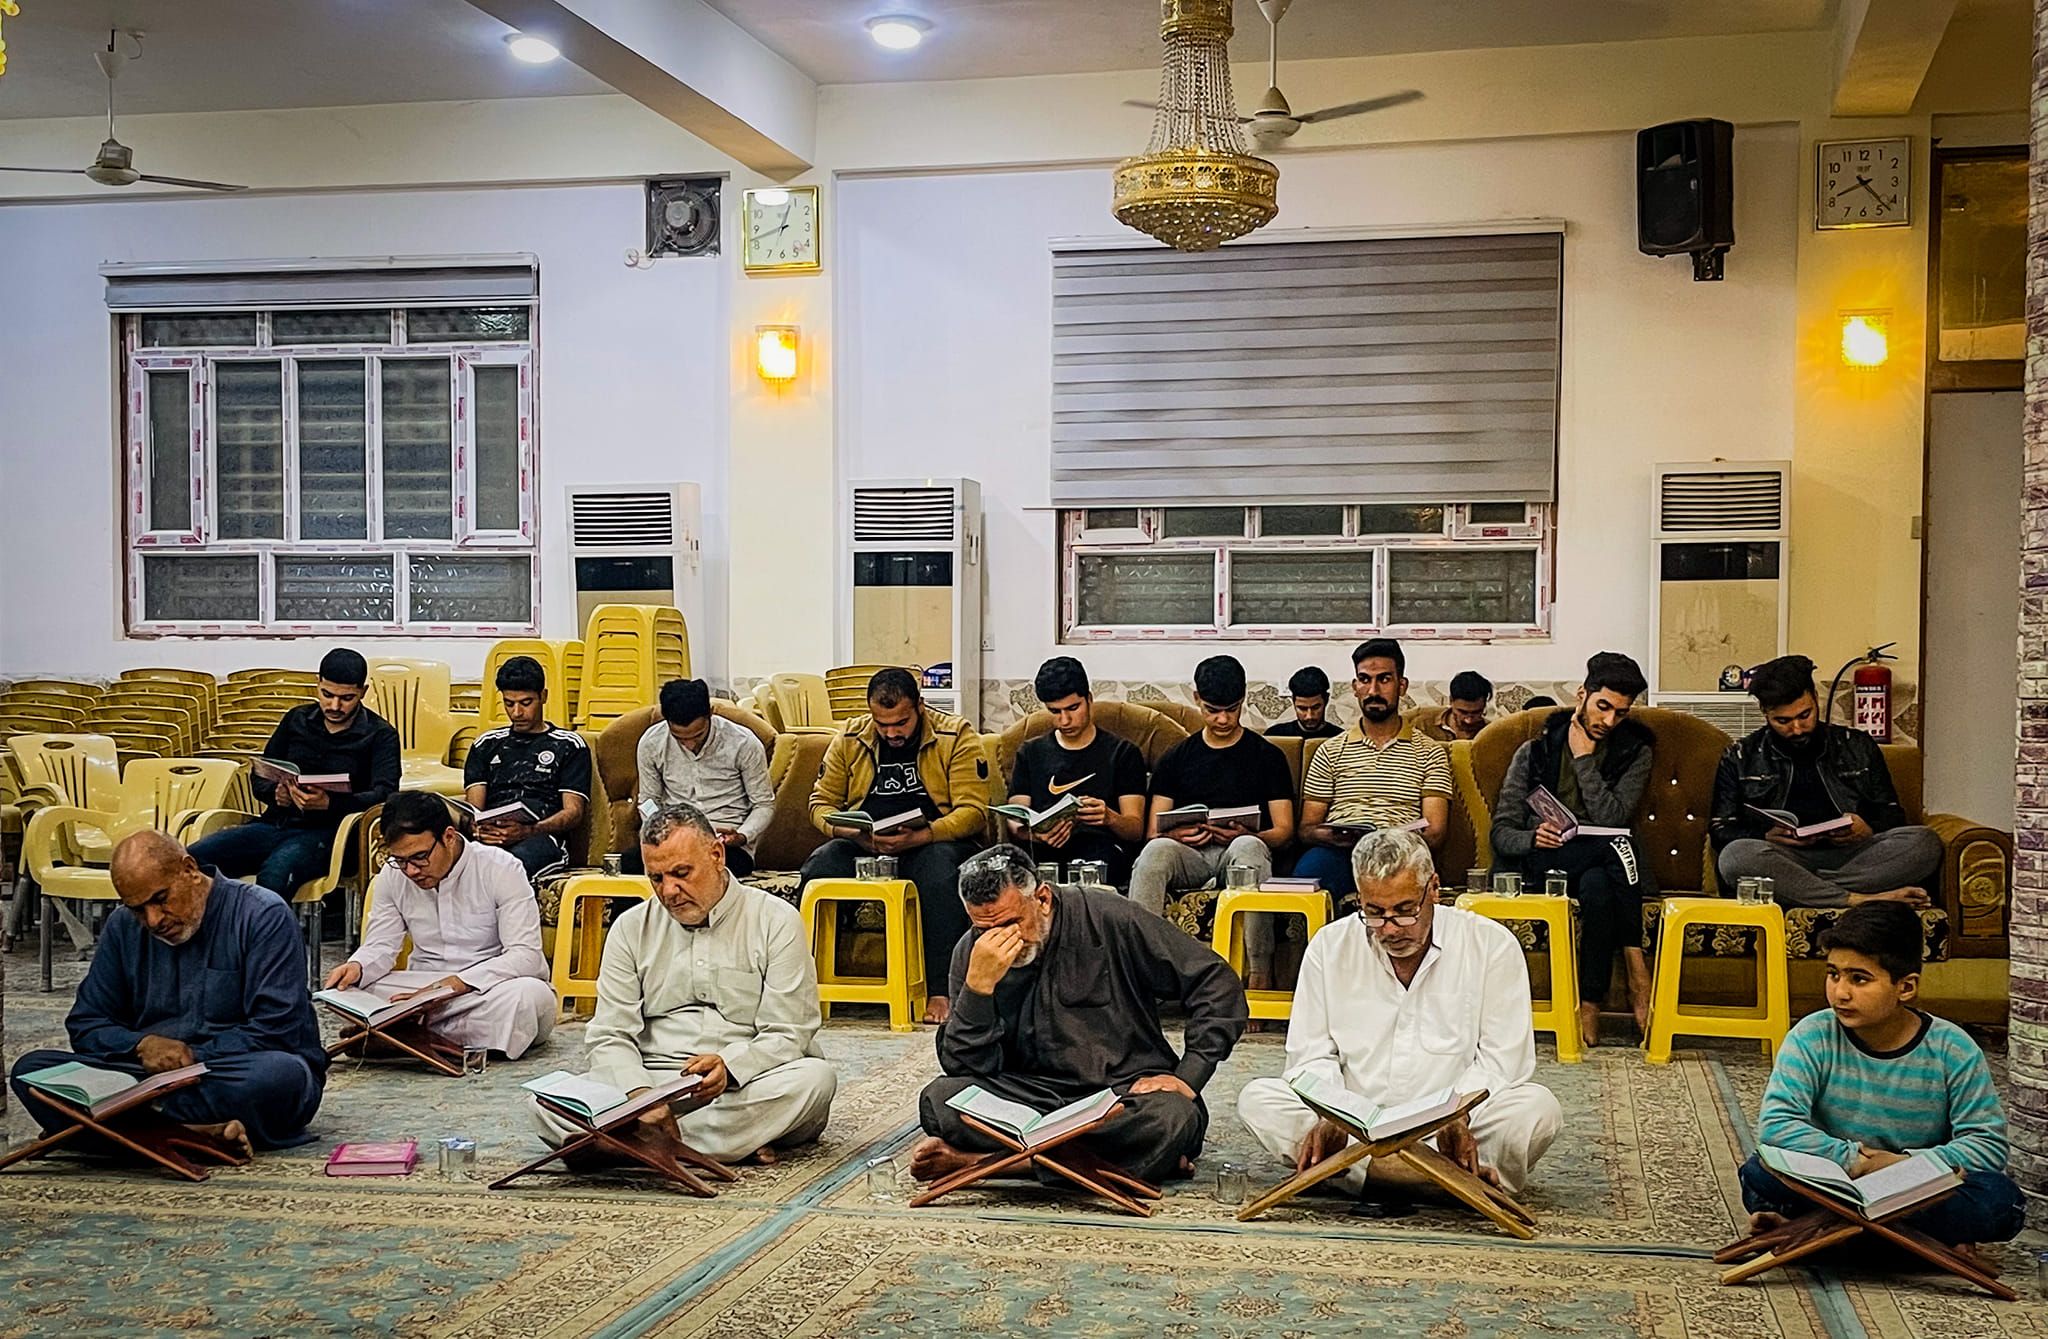 قضاء الهندية يشهد إقامة أكثر من (45) ختمة رمضانيّة يغترف من معينها المؤمنون